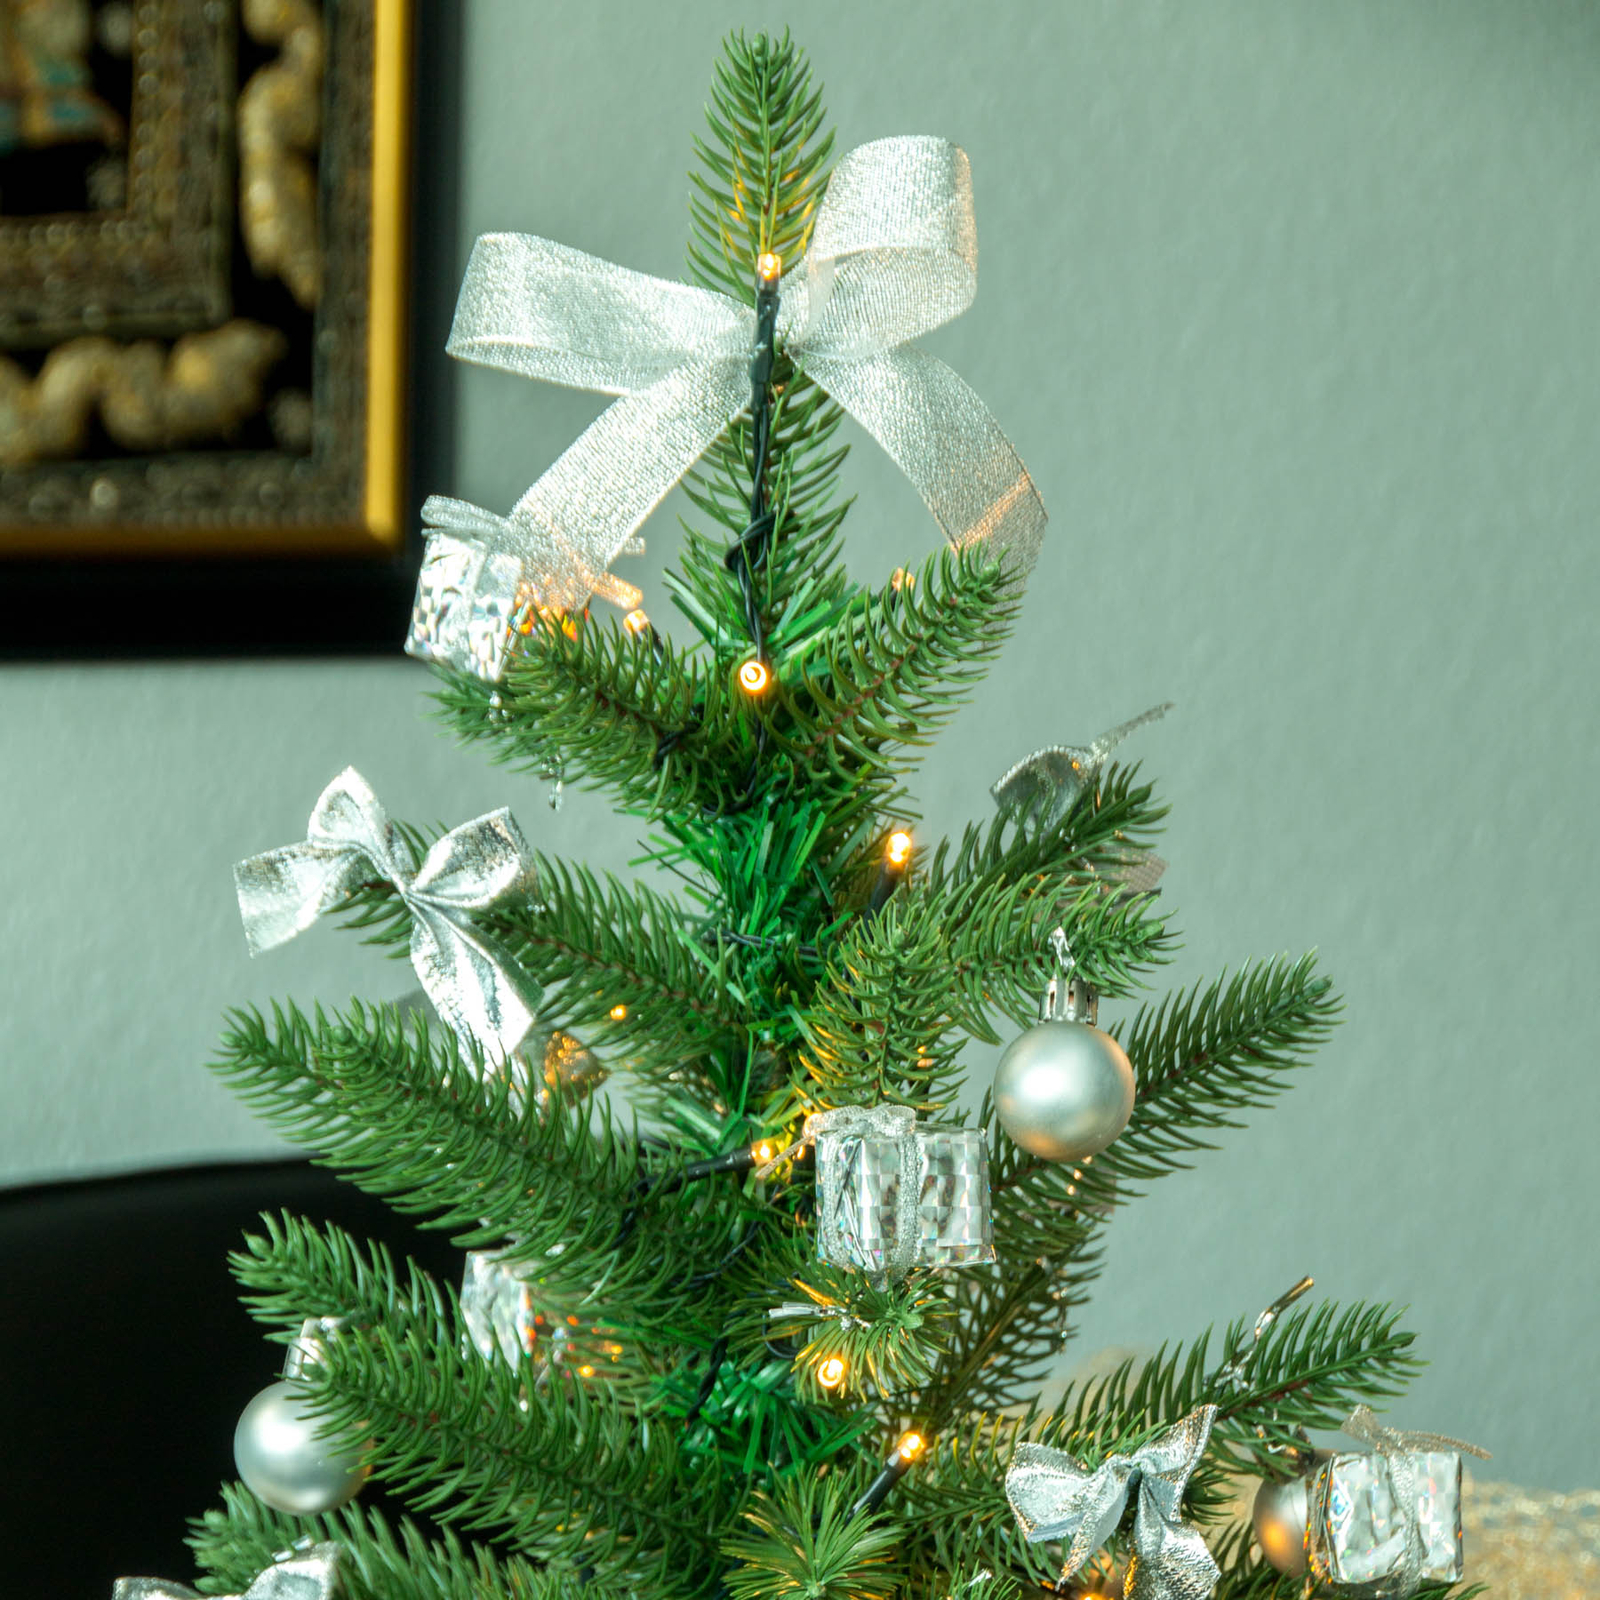 Laboratorium schade Harnas LED kerstboom met decoratie in zilver | Lampen24.nl